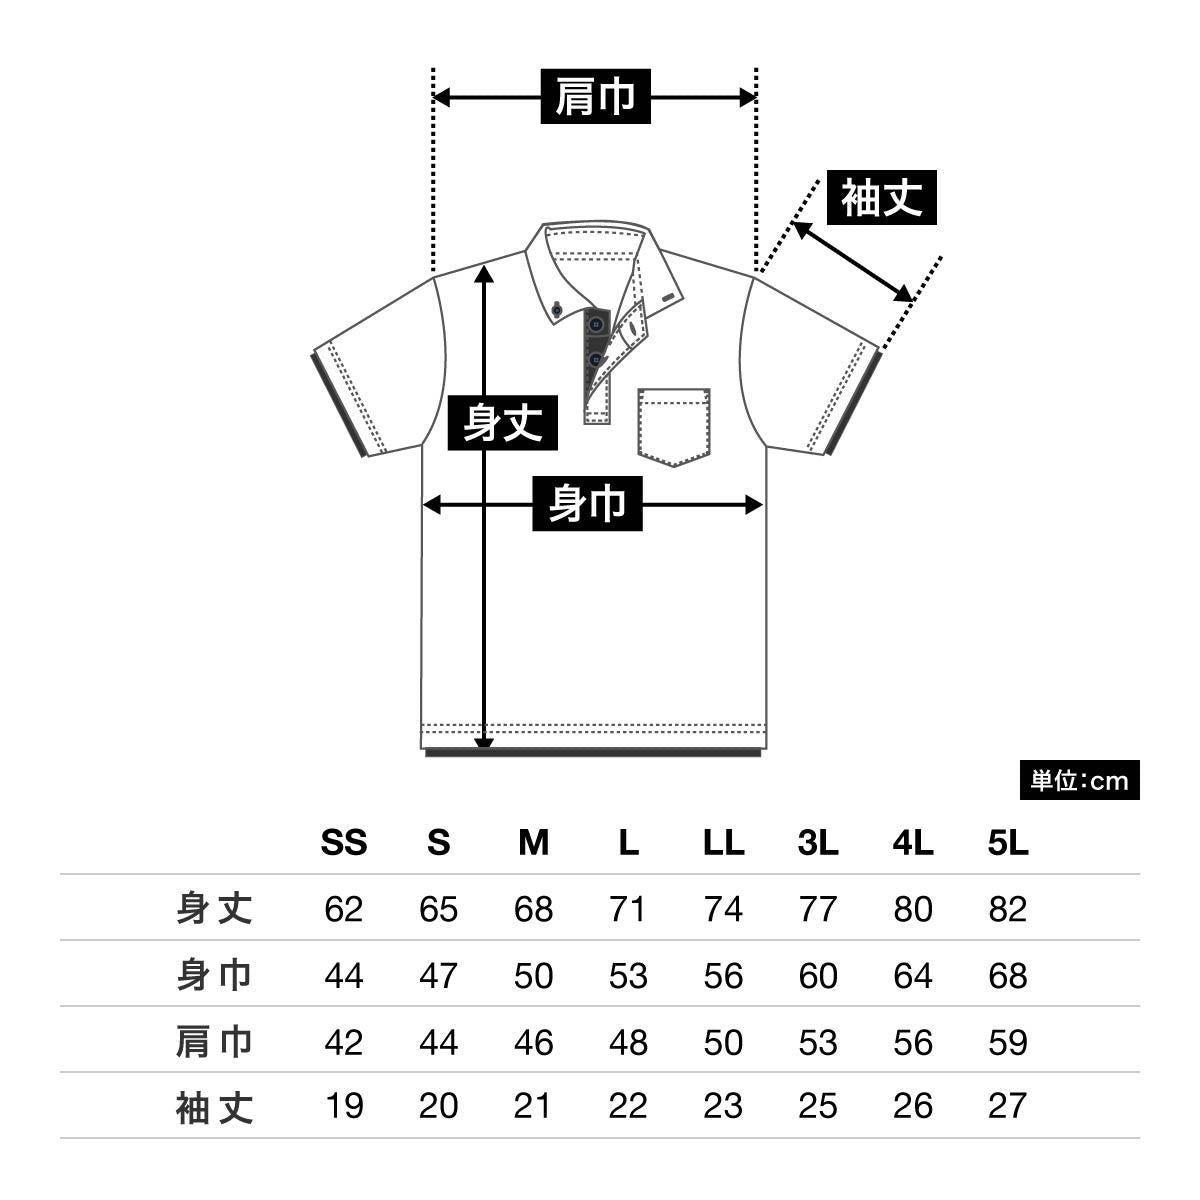 4.4オンス ドライレイヤードボタンダウンポロシャツ | メンズ | 1枚 | 00315-AYB | ホワイト×ロイヤルブルー